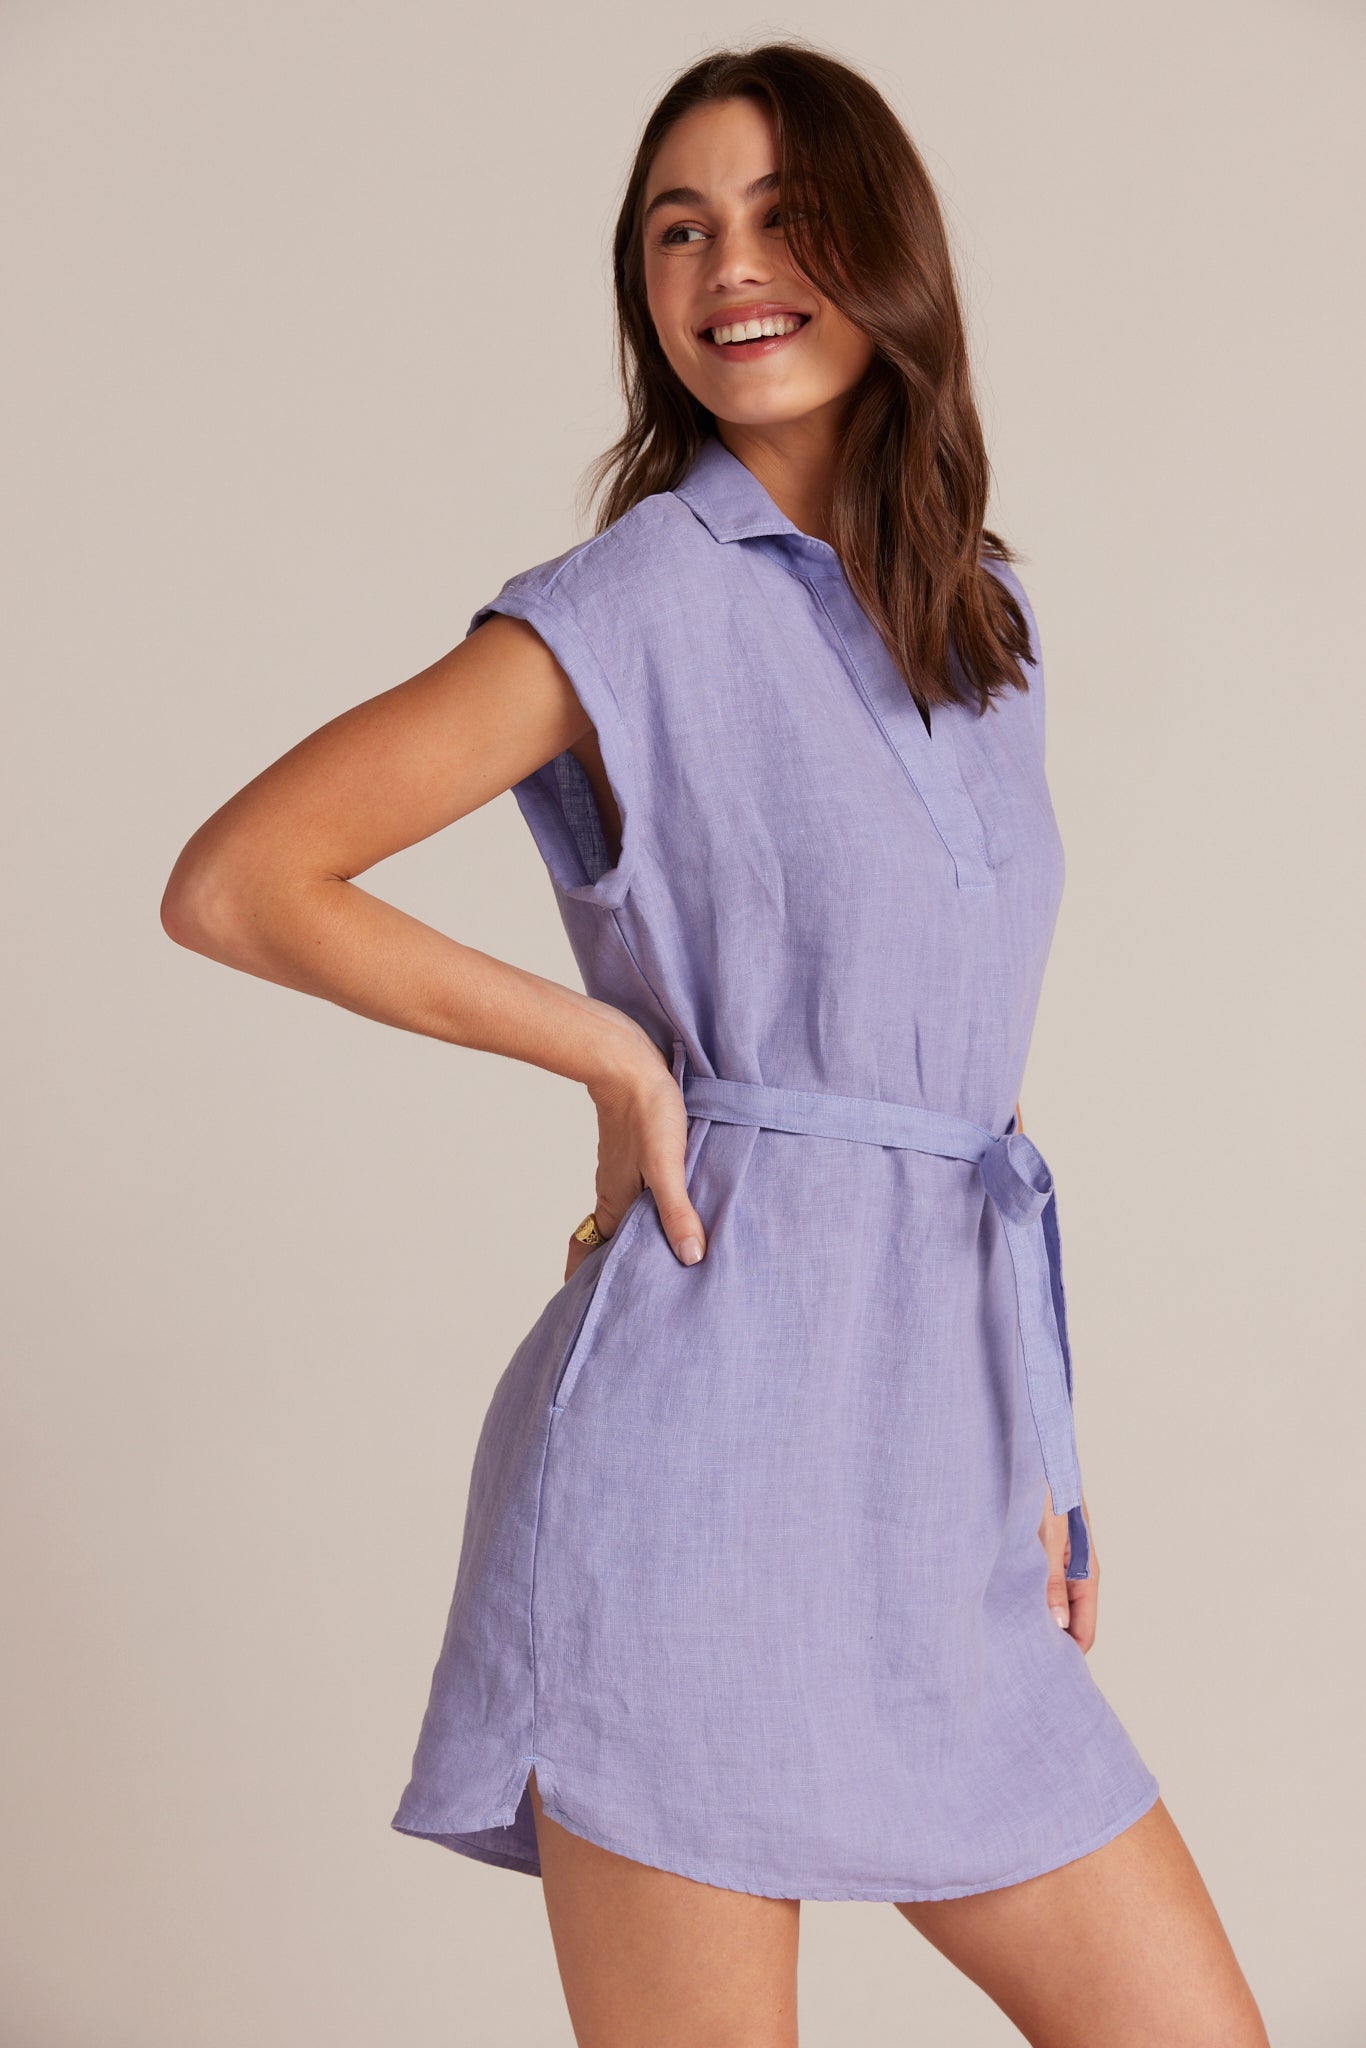 Bella DahlBelted Linen Shirt Dress - Purple IrisDresses